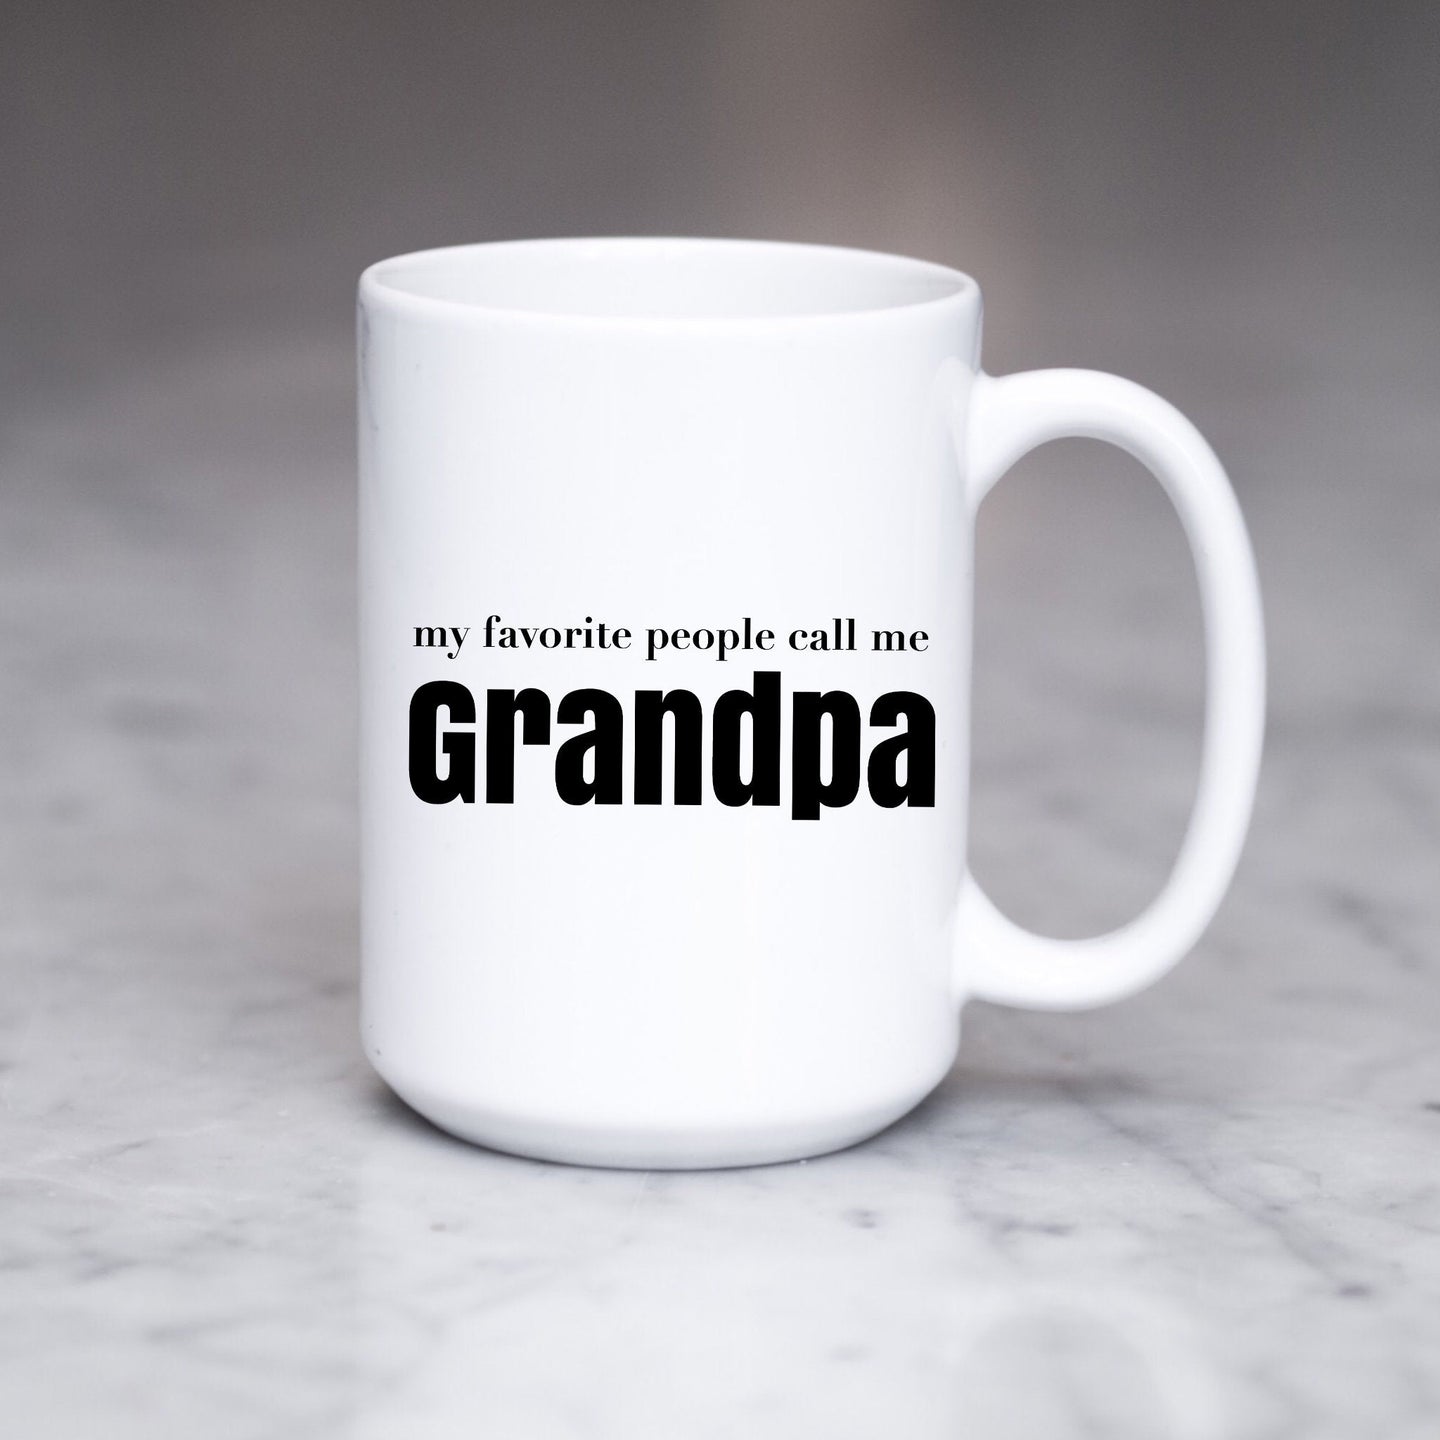 My favorite people call me Grandpa